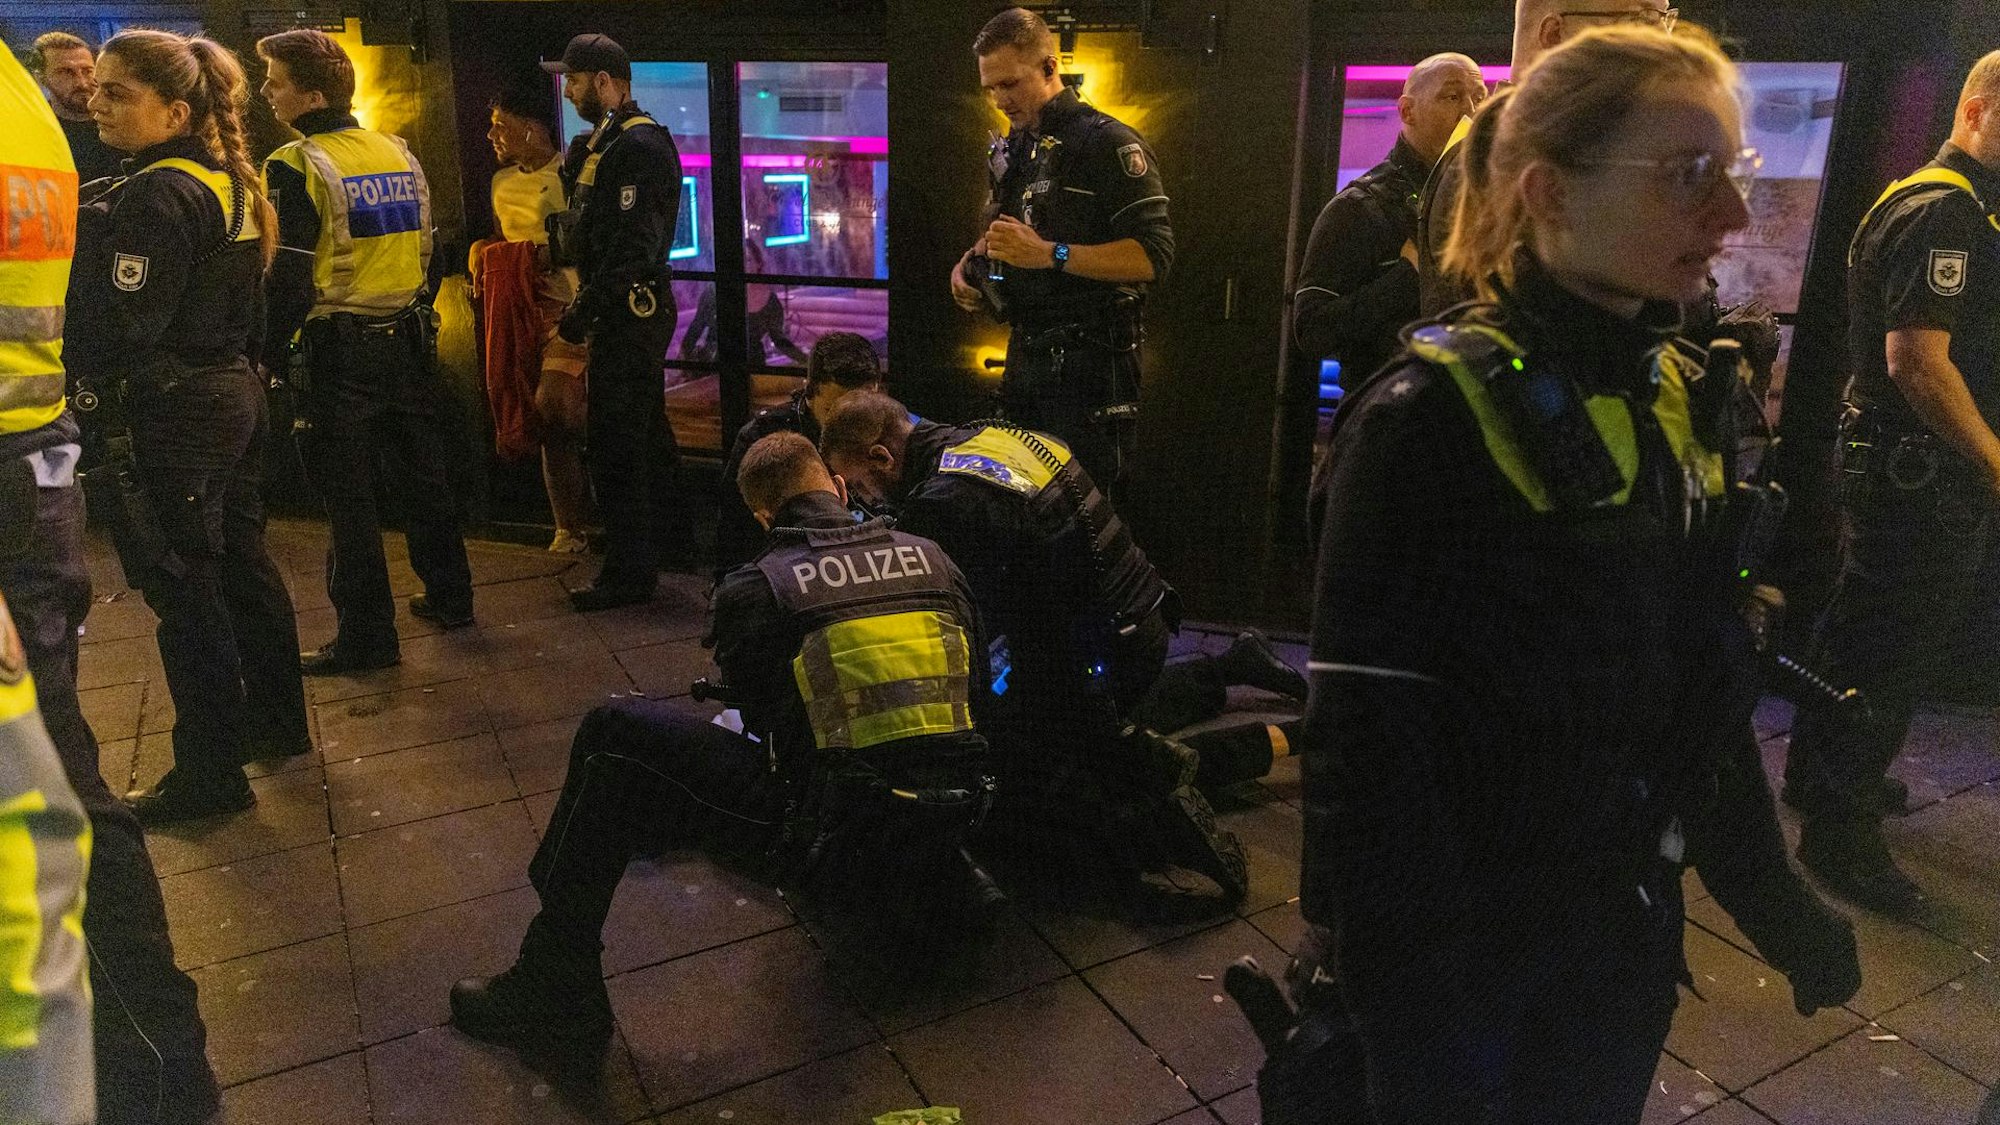 Polizisten fixieren einen aggressiven Mann am Boden.